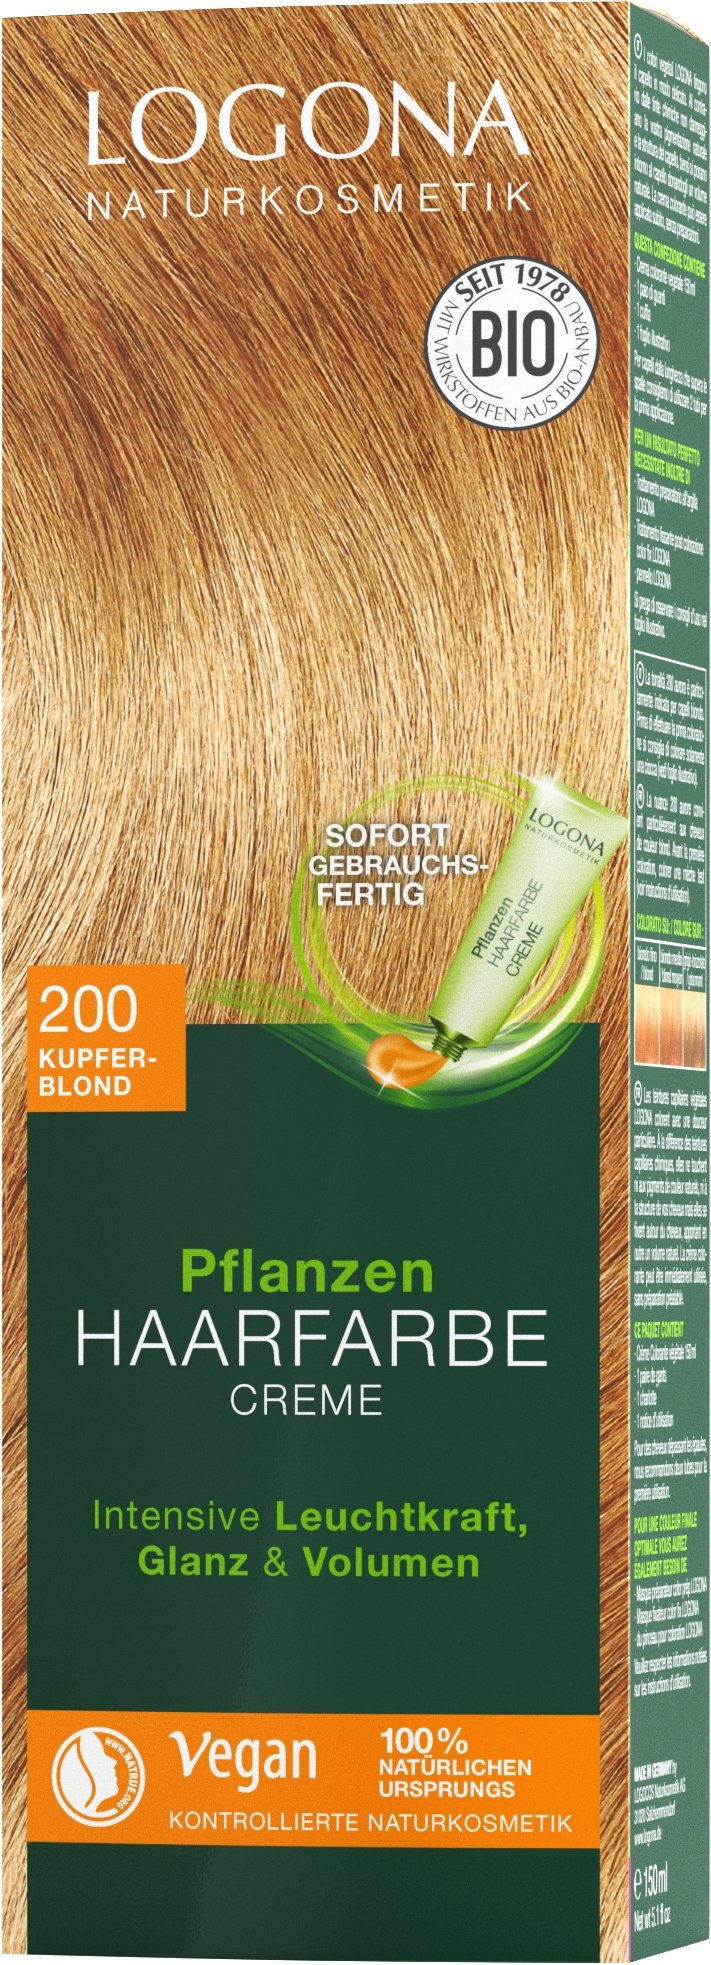 Pflanzen-Haarfarbe Creme 200 Kupferblond Logona | | Haarfarben